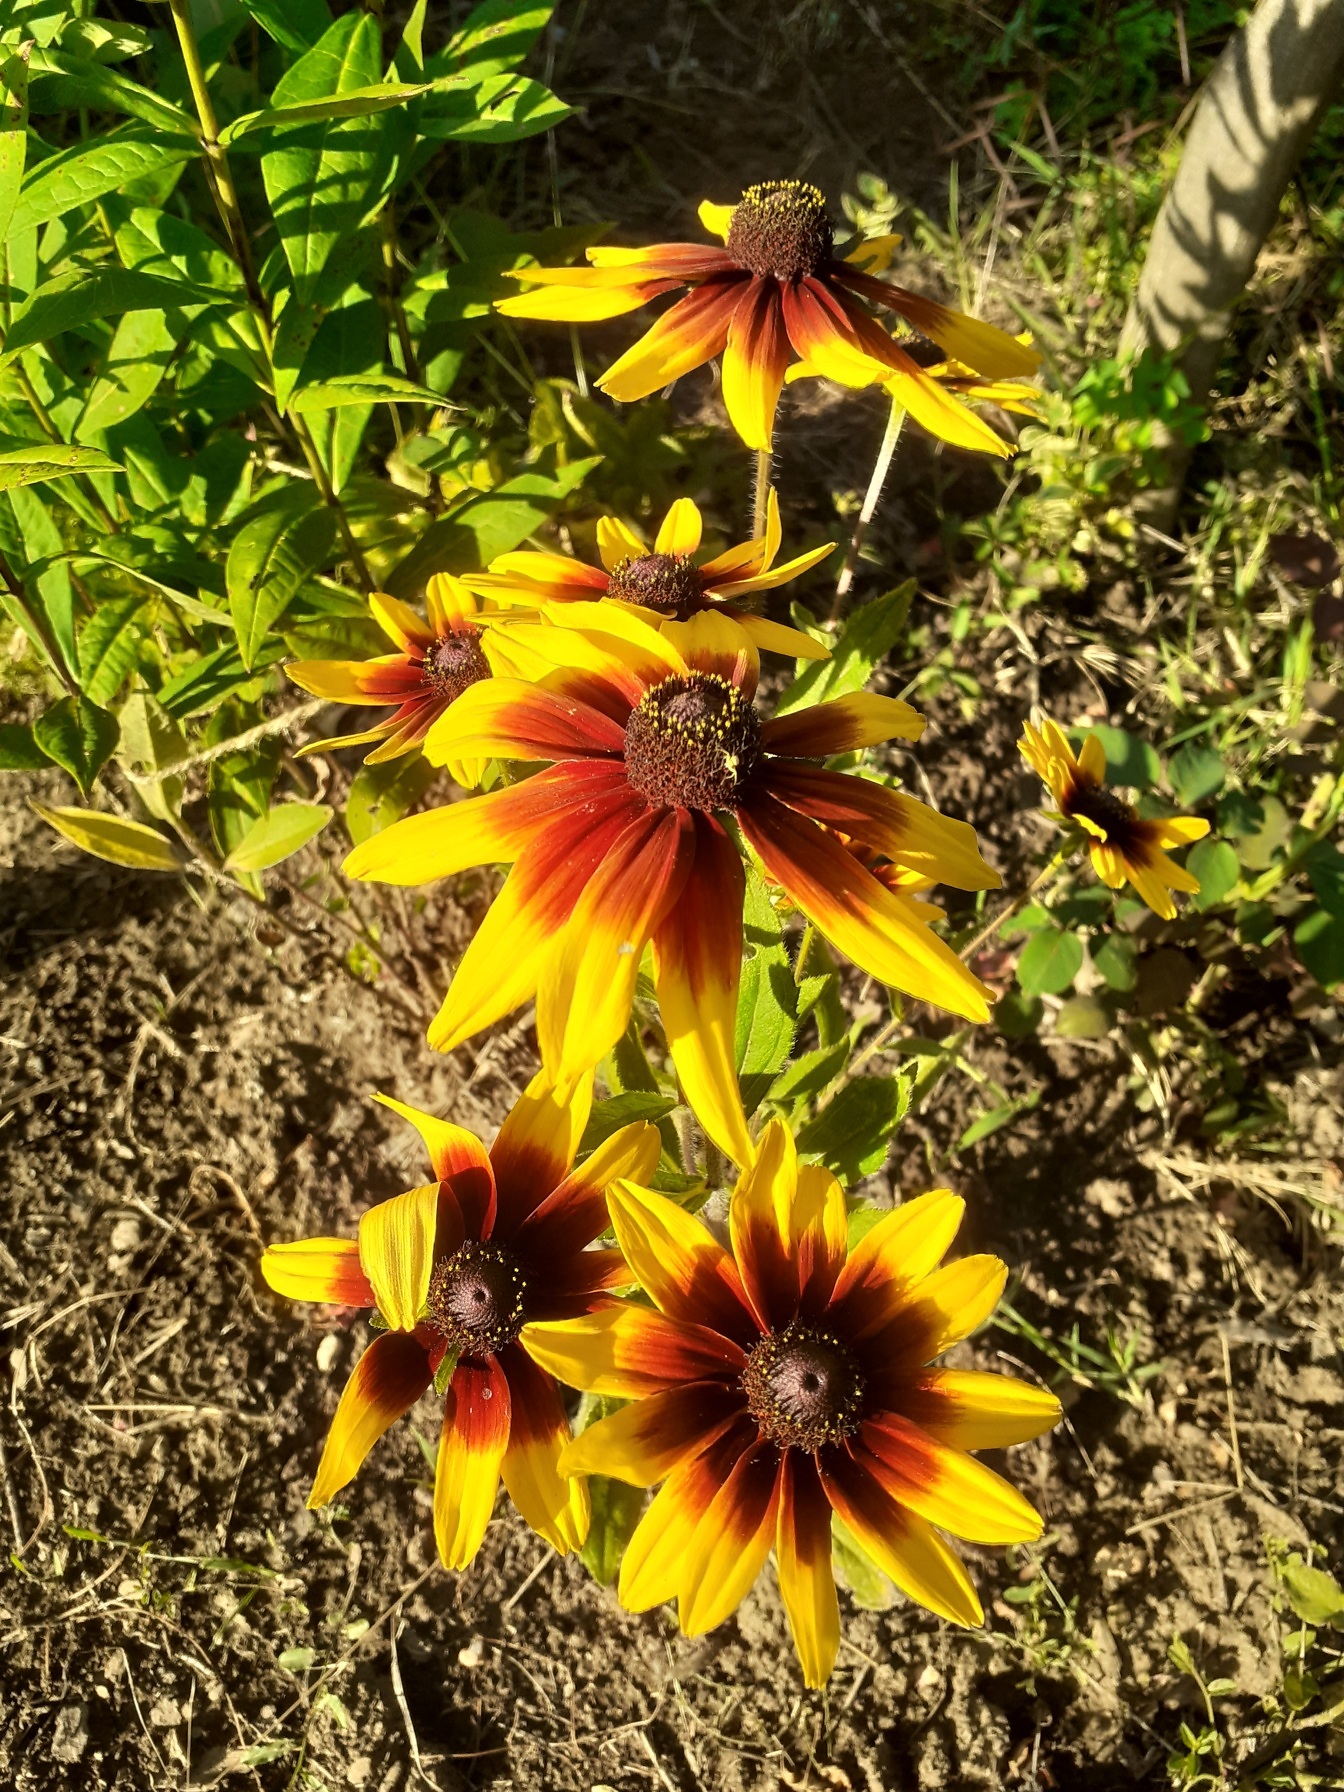 黒い目のスーザンの花のオレンジ黄色の花びら(Ruudbeckia hirta)